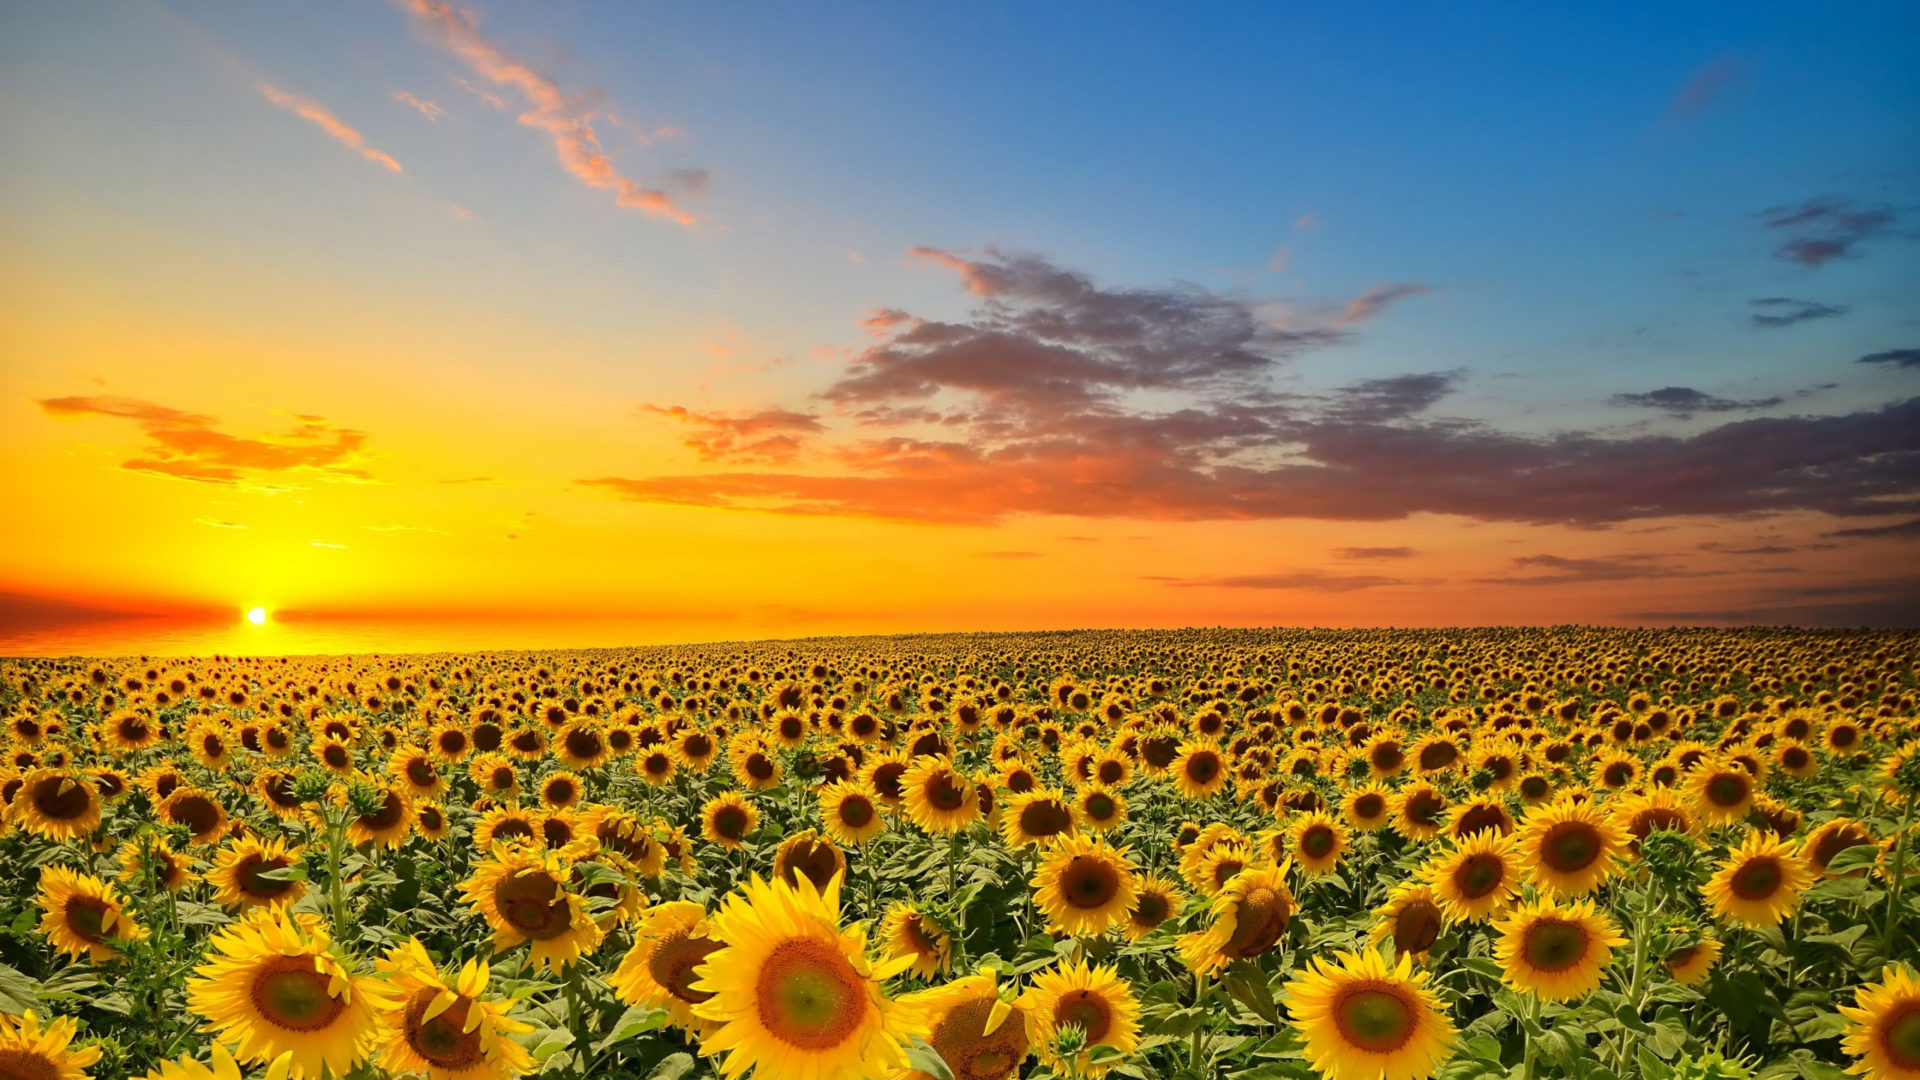 1920x1080 Sunset Over Sunflowers Field Wallpaper HD KDE Store